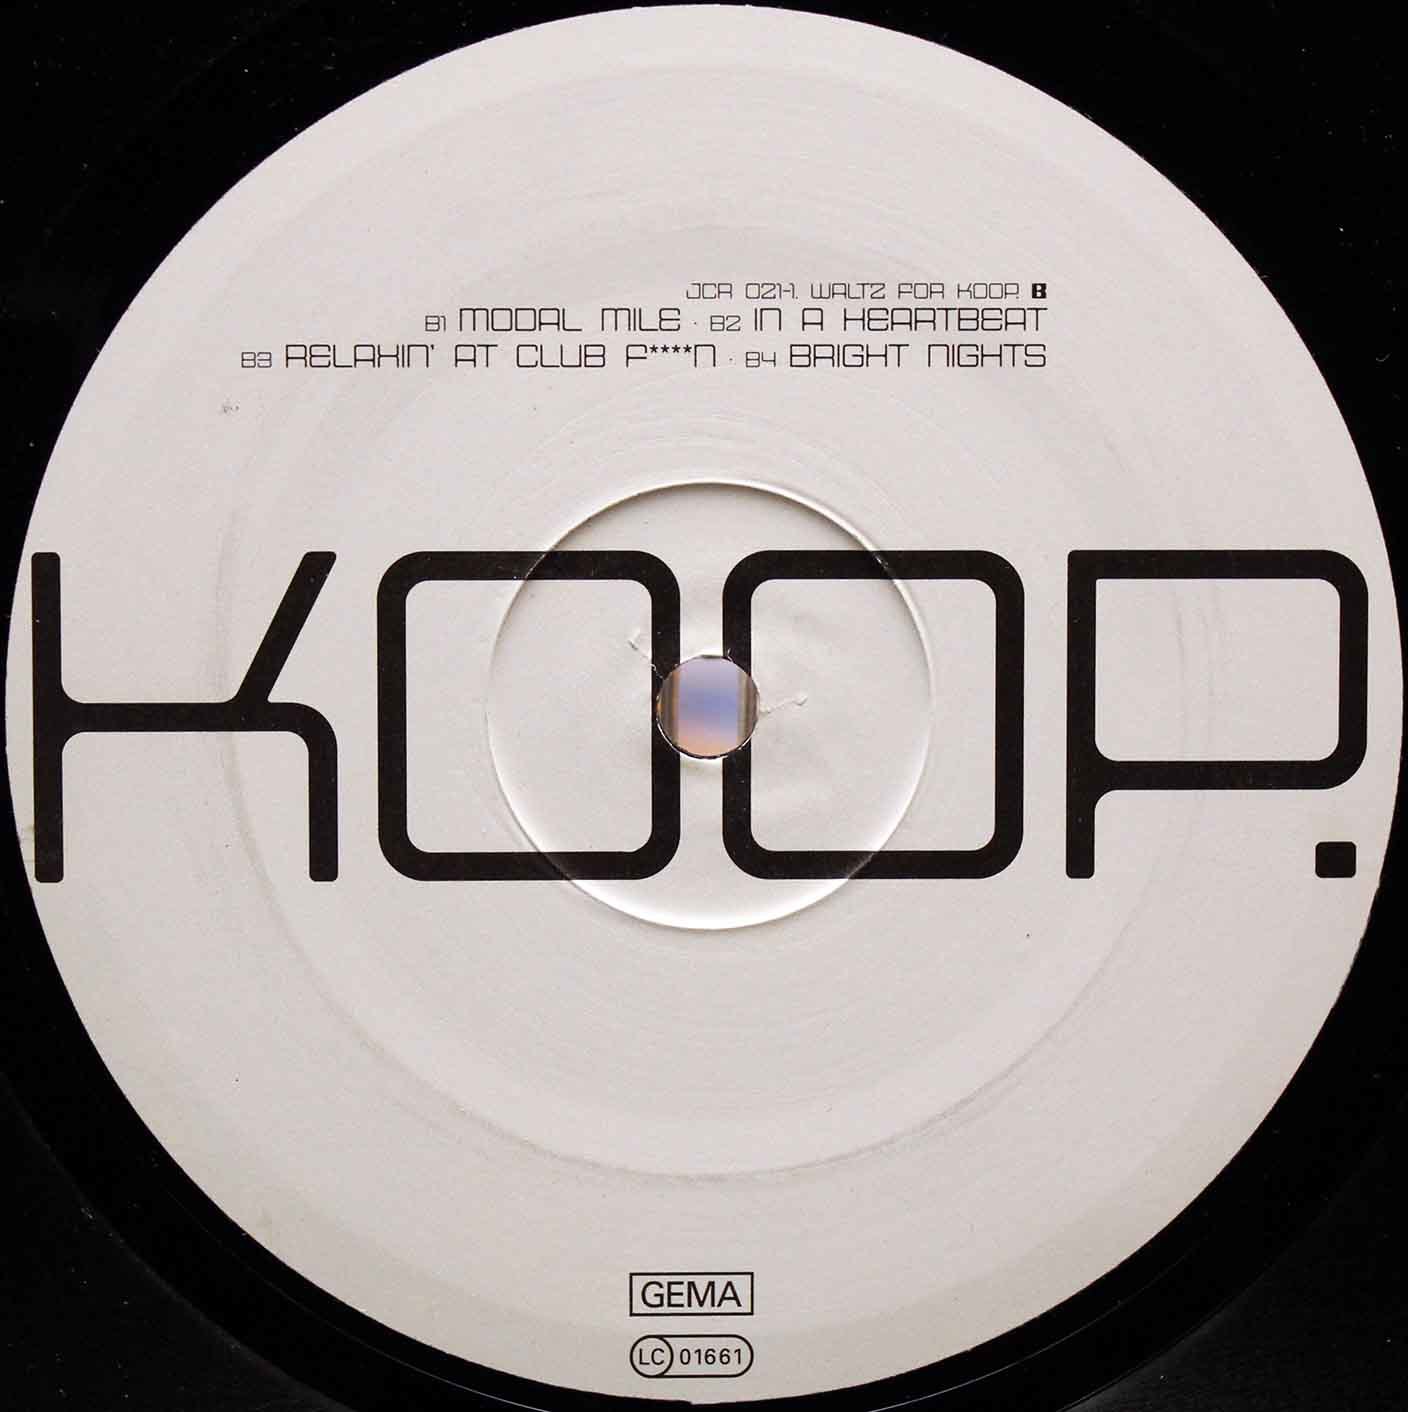 Koop (2001) – Waltz For Koop 04